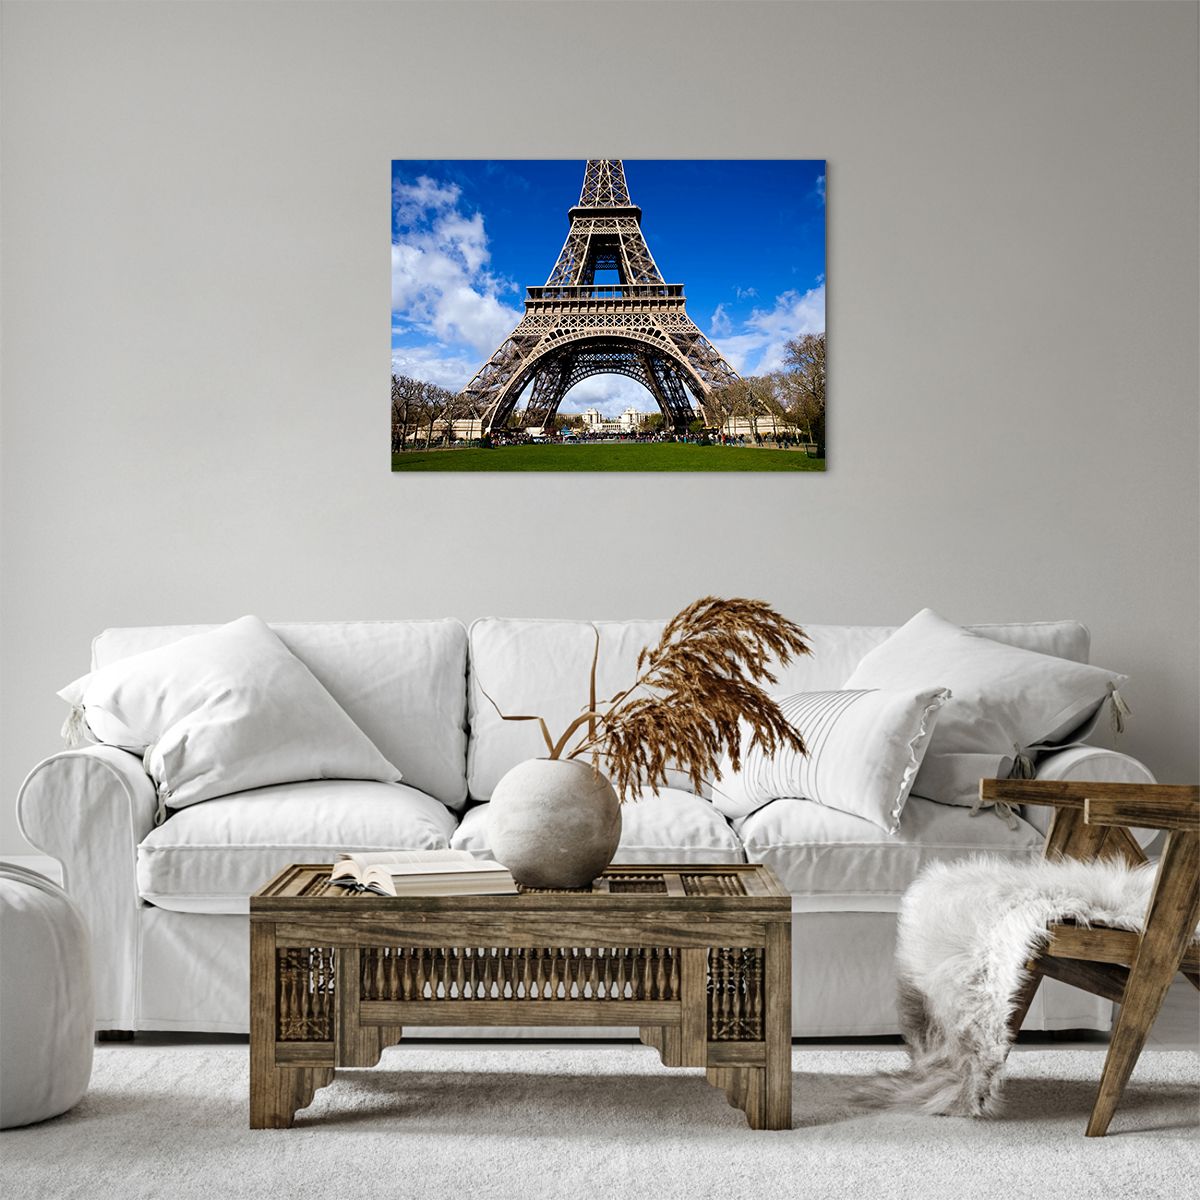 Bild auf Leinwand Eiffelturm, Bild auf Leinwand Paris, Bild auf Leinwand Die Architektur, Bild auf Leinwand Frankreich, Bild auf Leinwand Stadt